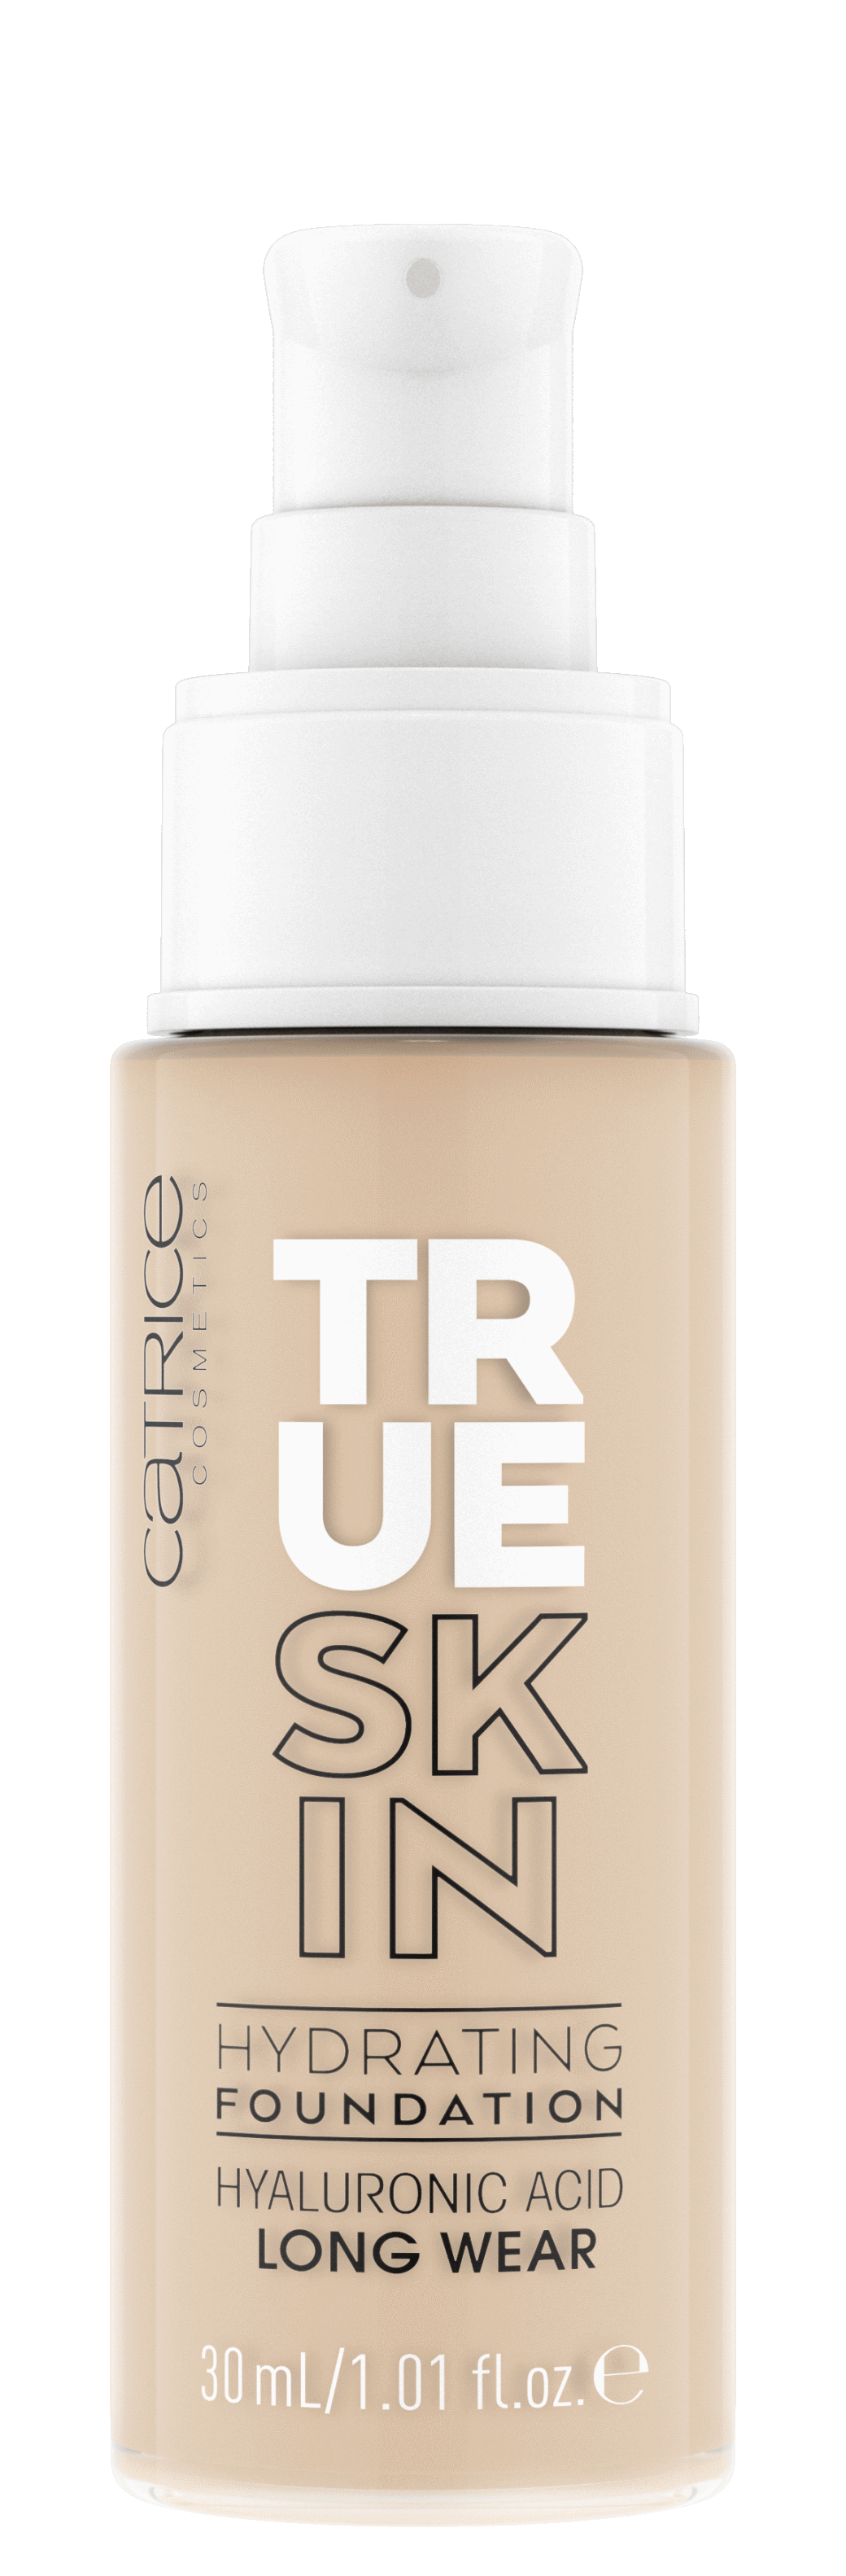 Upoznajte novi Catrice True skin hidratantni puder!